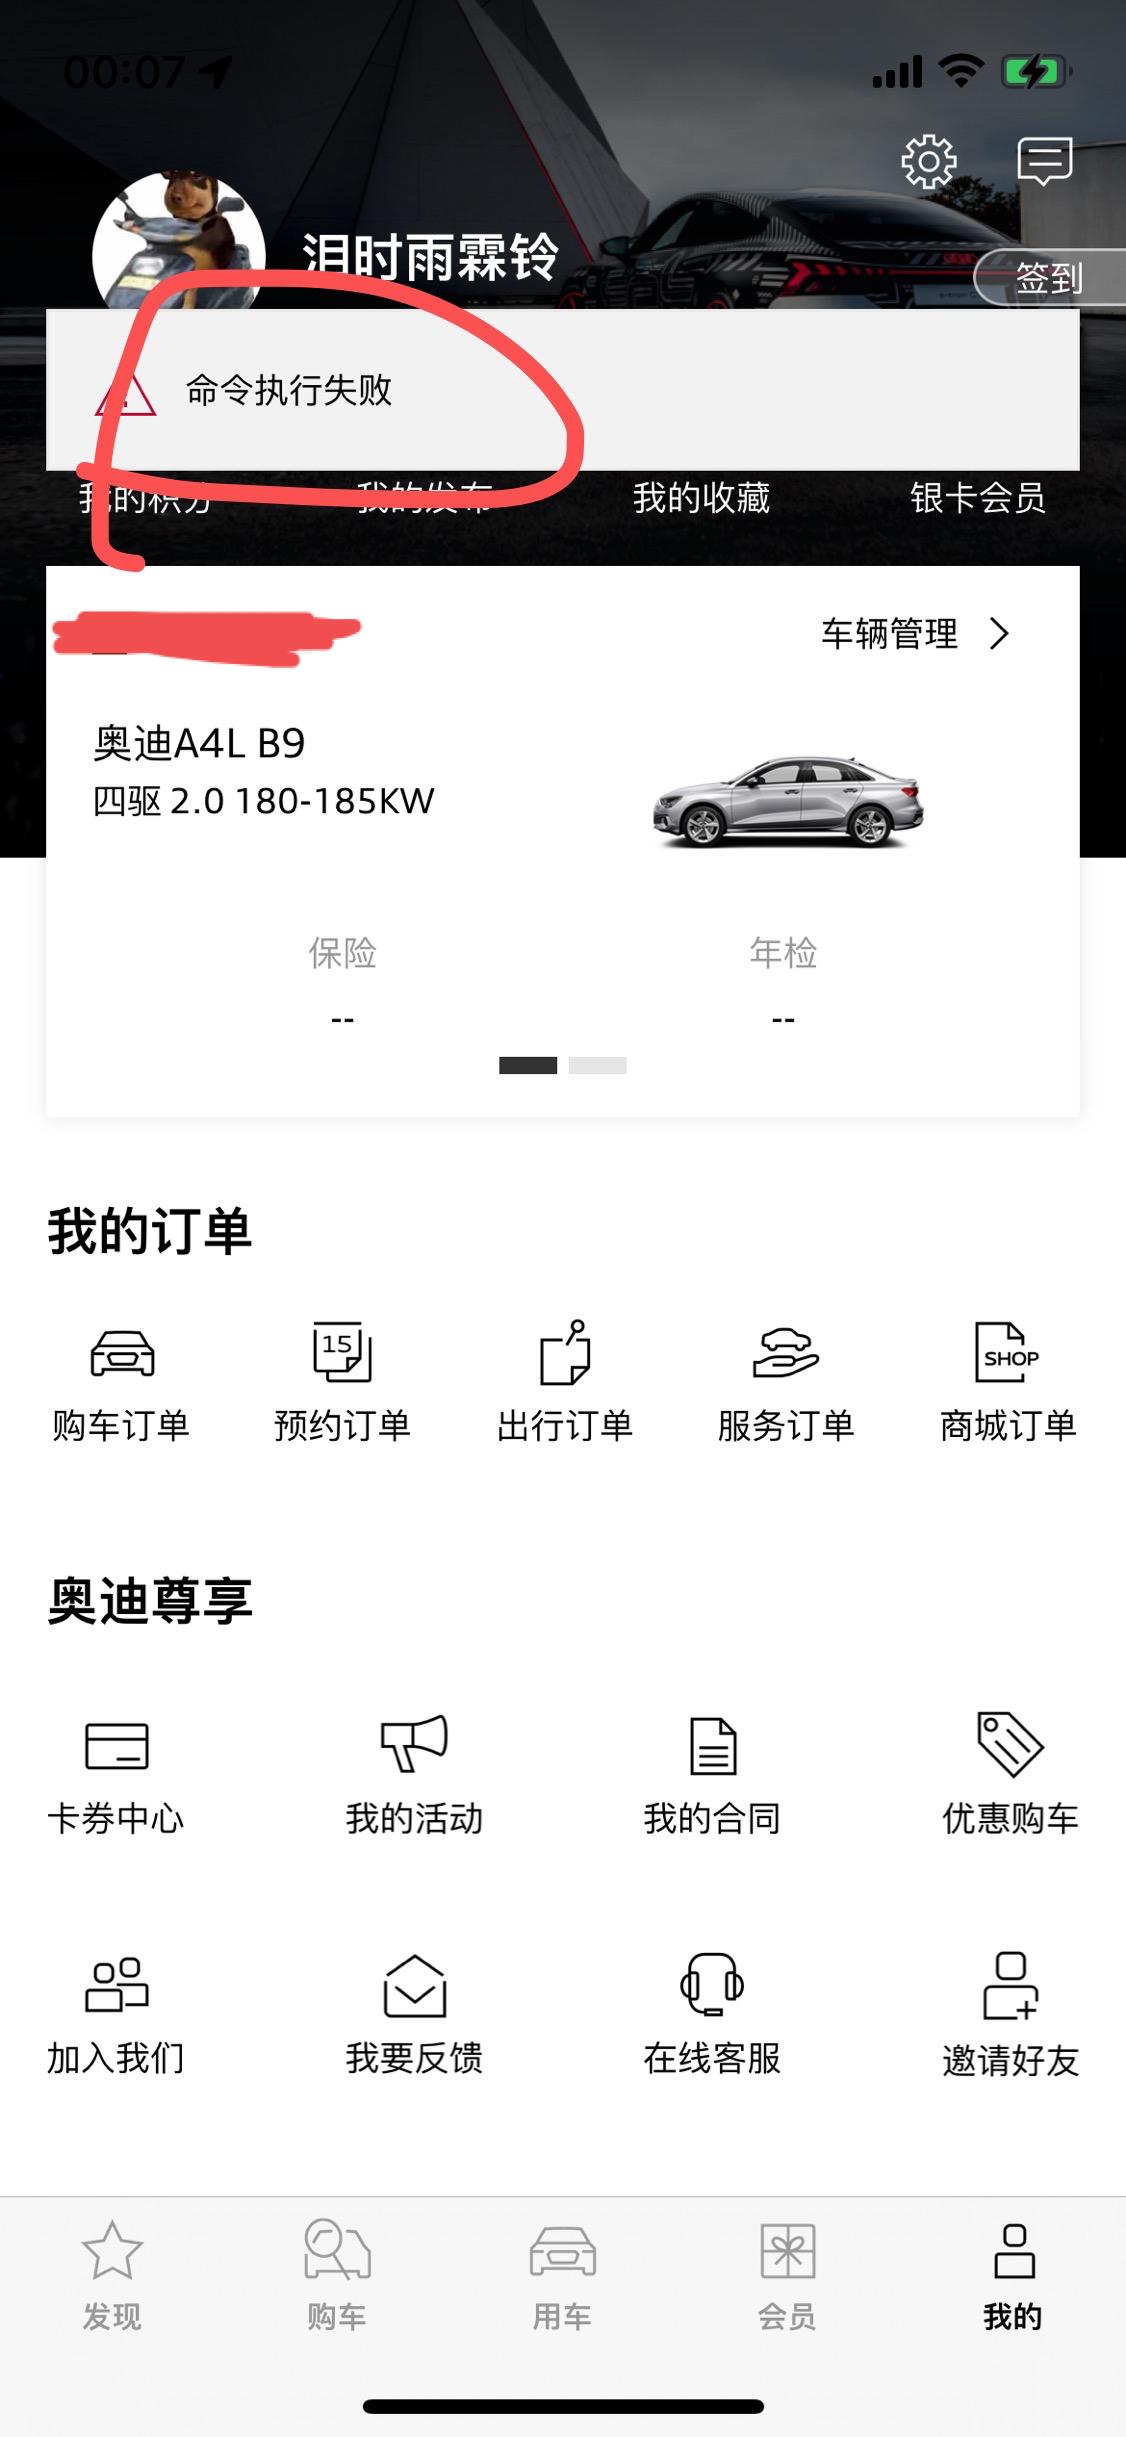 奥迪A4L 请问这是什么情况，从6.30号之后一汽奥迪app无法更新车辆信息，只有车发动了才能获取。